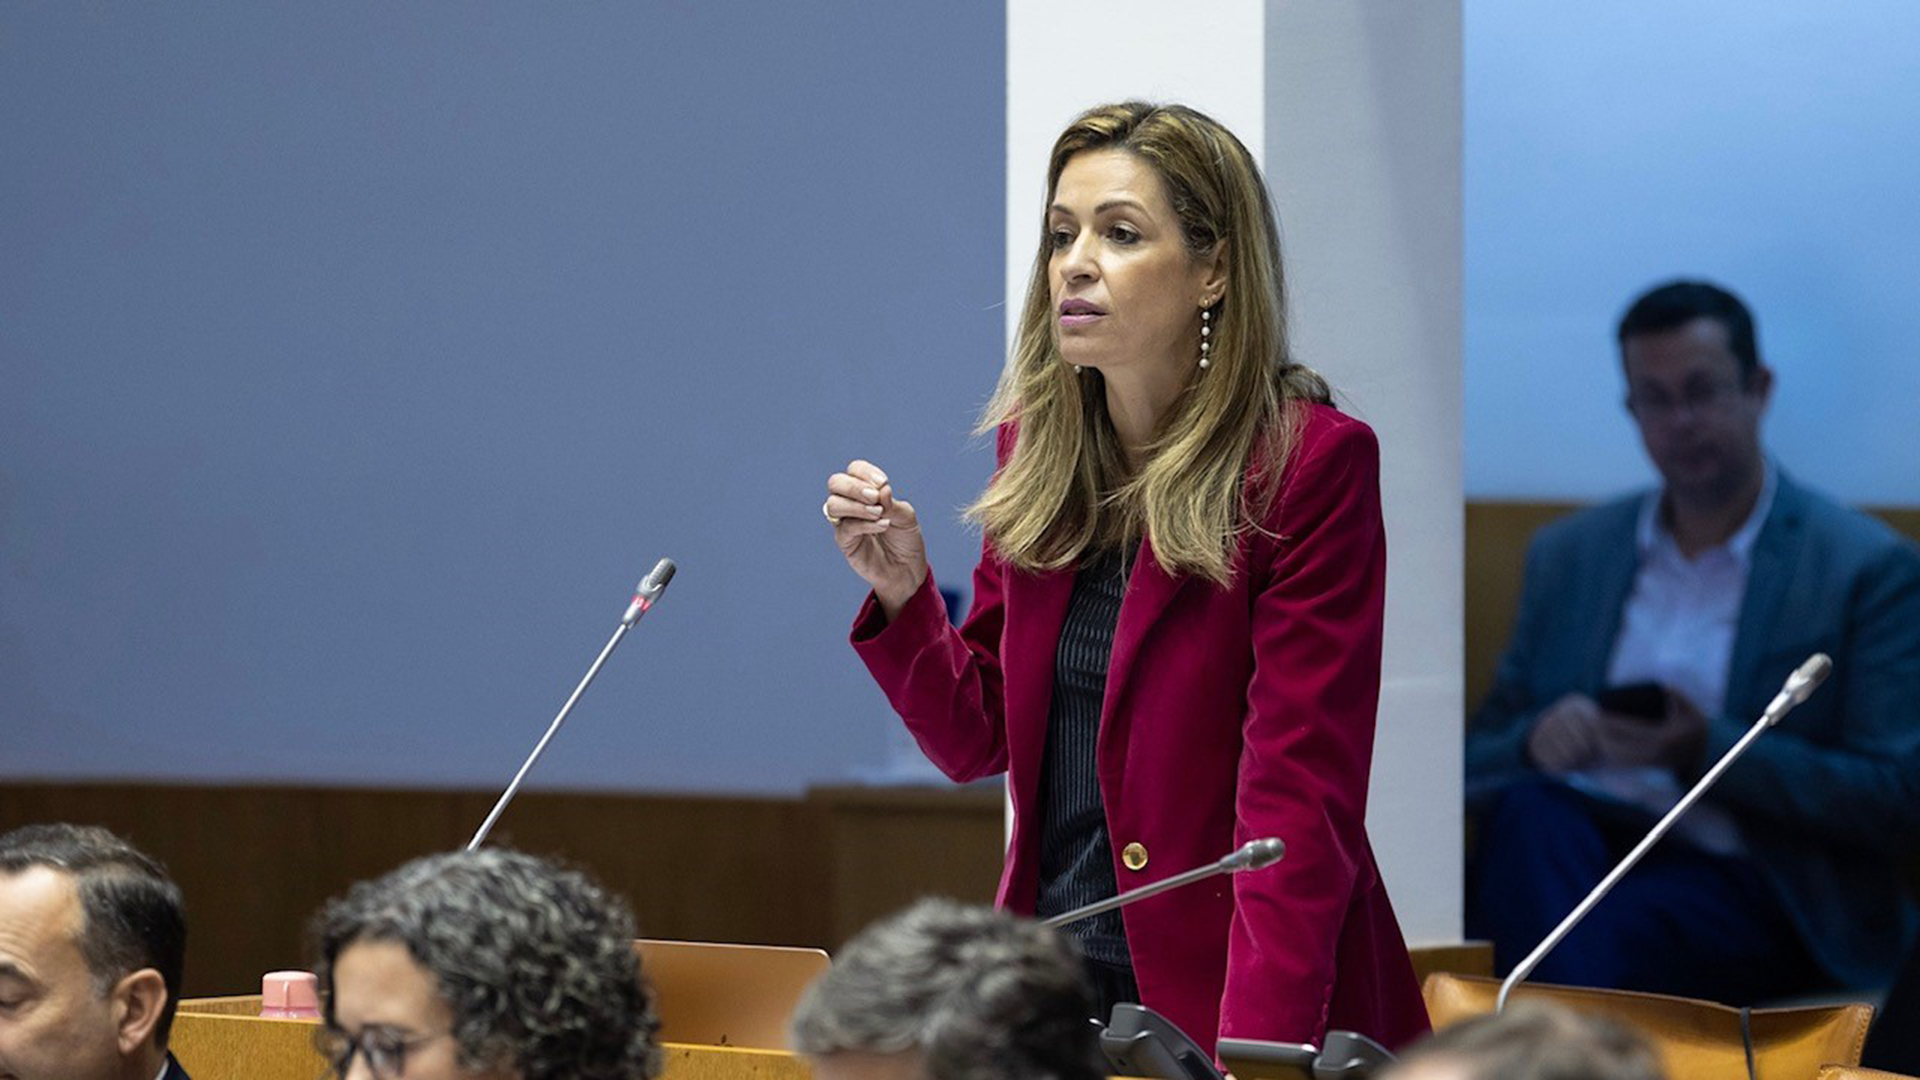 Maria João Carreiro reafirma investimento em “política robusta” de emprego para “melhorar situação laboral dos açorianos”